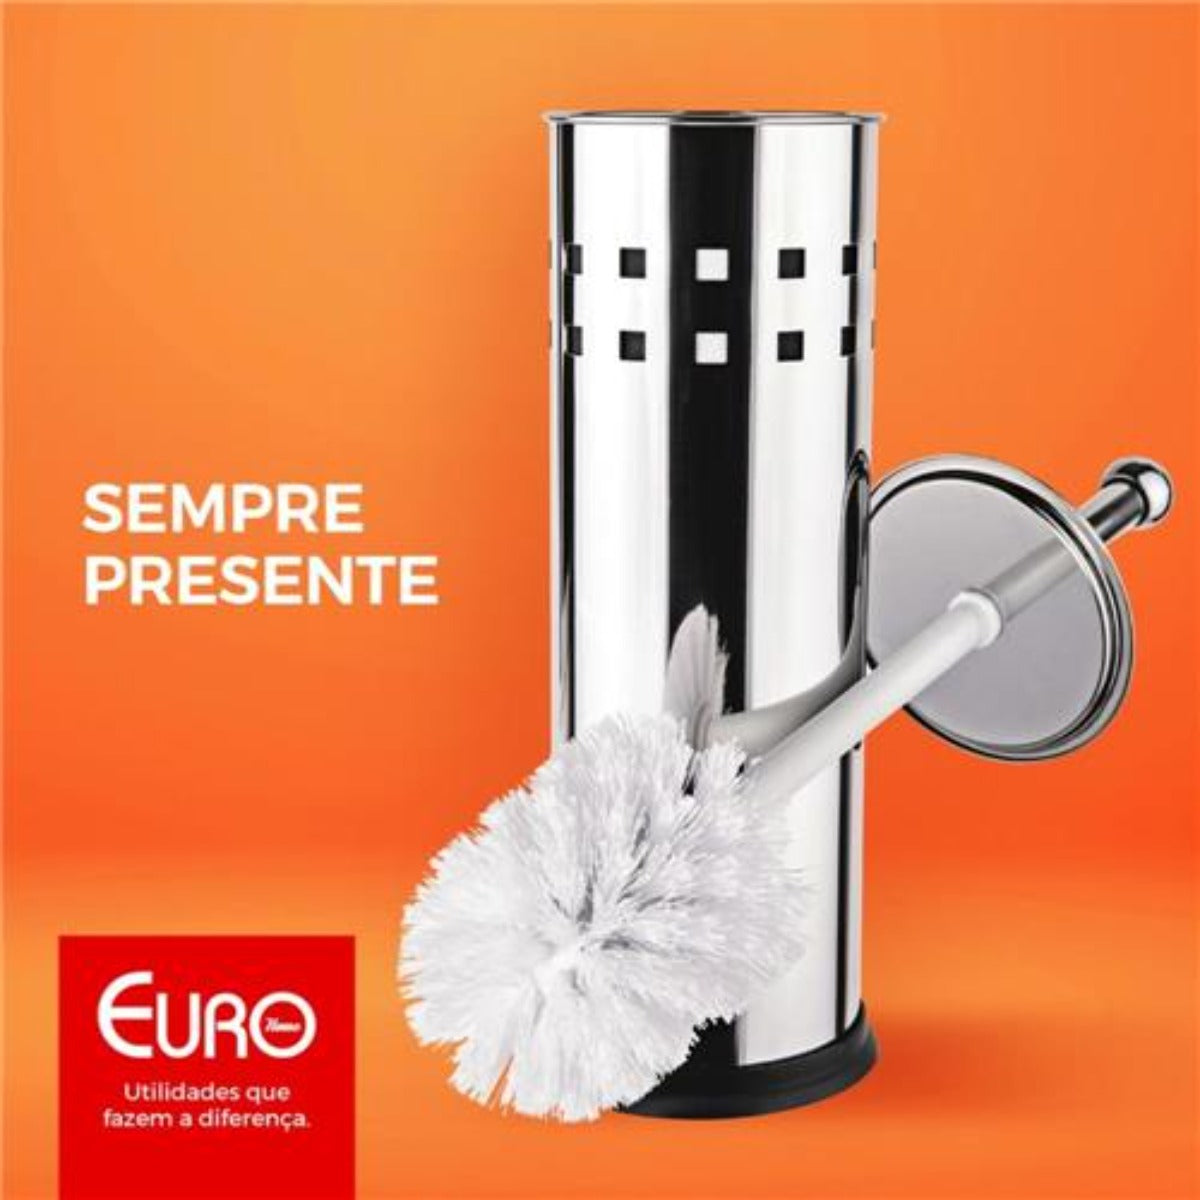 Escova Sanitária Inox com Suporte Euro - Altaluce